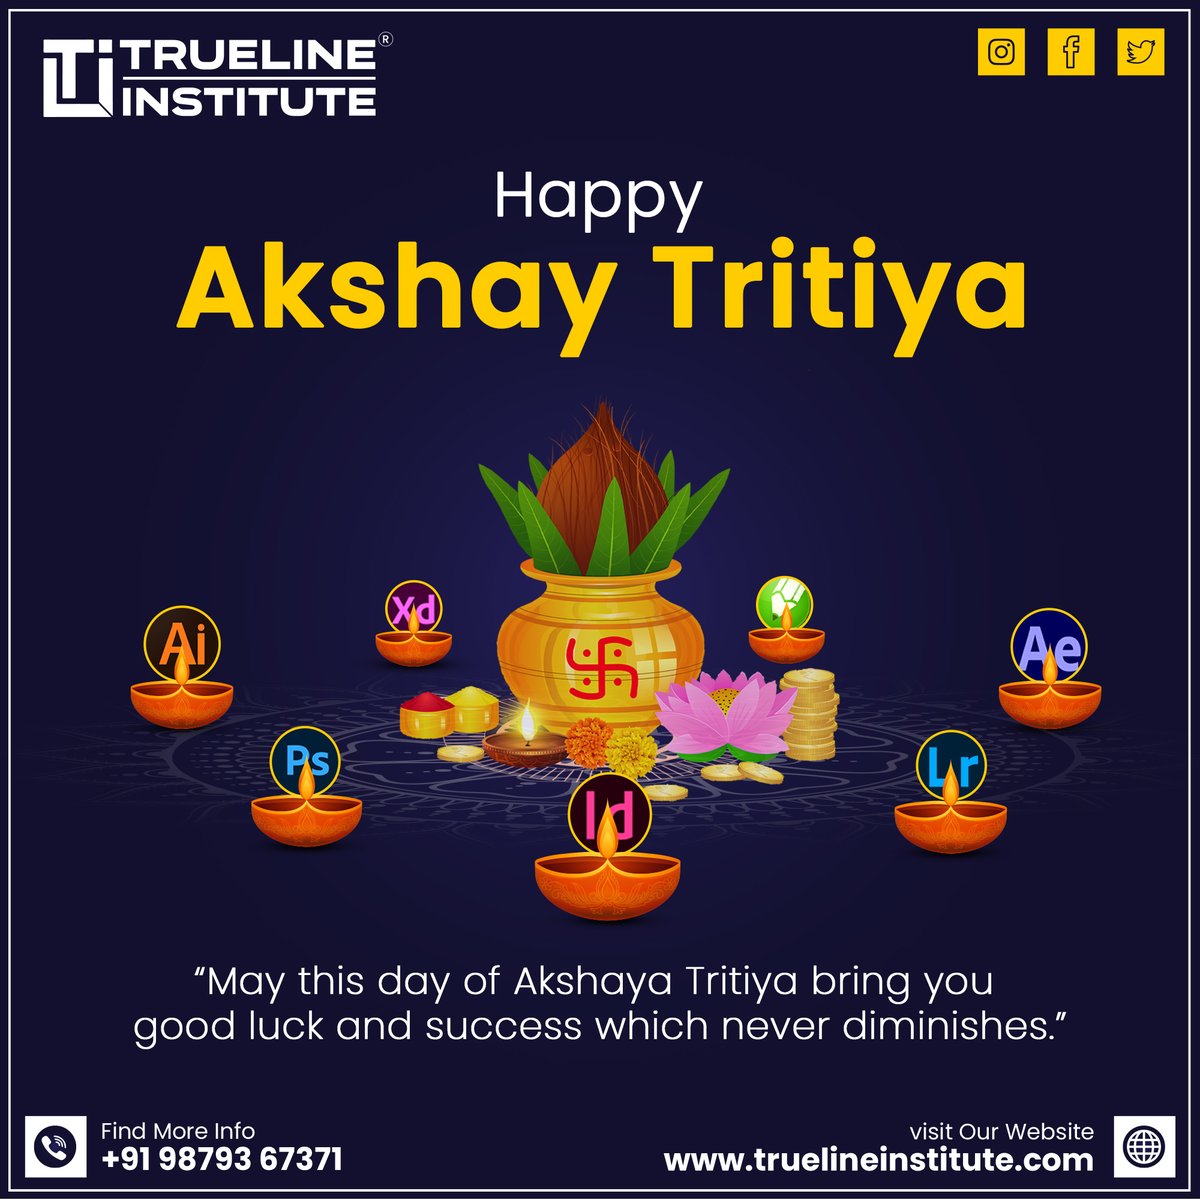 📢 Happy Akshaya Tritiya | Trueline Institute
☎️ +91 98793 67371
🌐truelineinstitute.com
📧truelineinstitute@gmail.com
#truelineinstitute #institute #itcourses #akshayatritiya #prosperityday #goldenopportunity #wealthabundance #blessingsofakshayatritiya #eternalprosperity